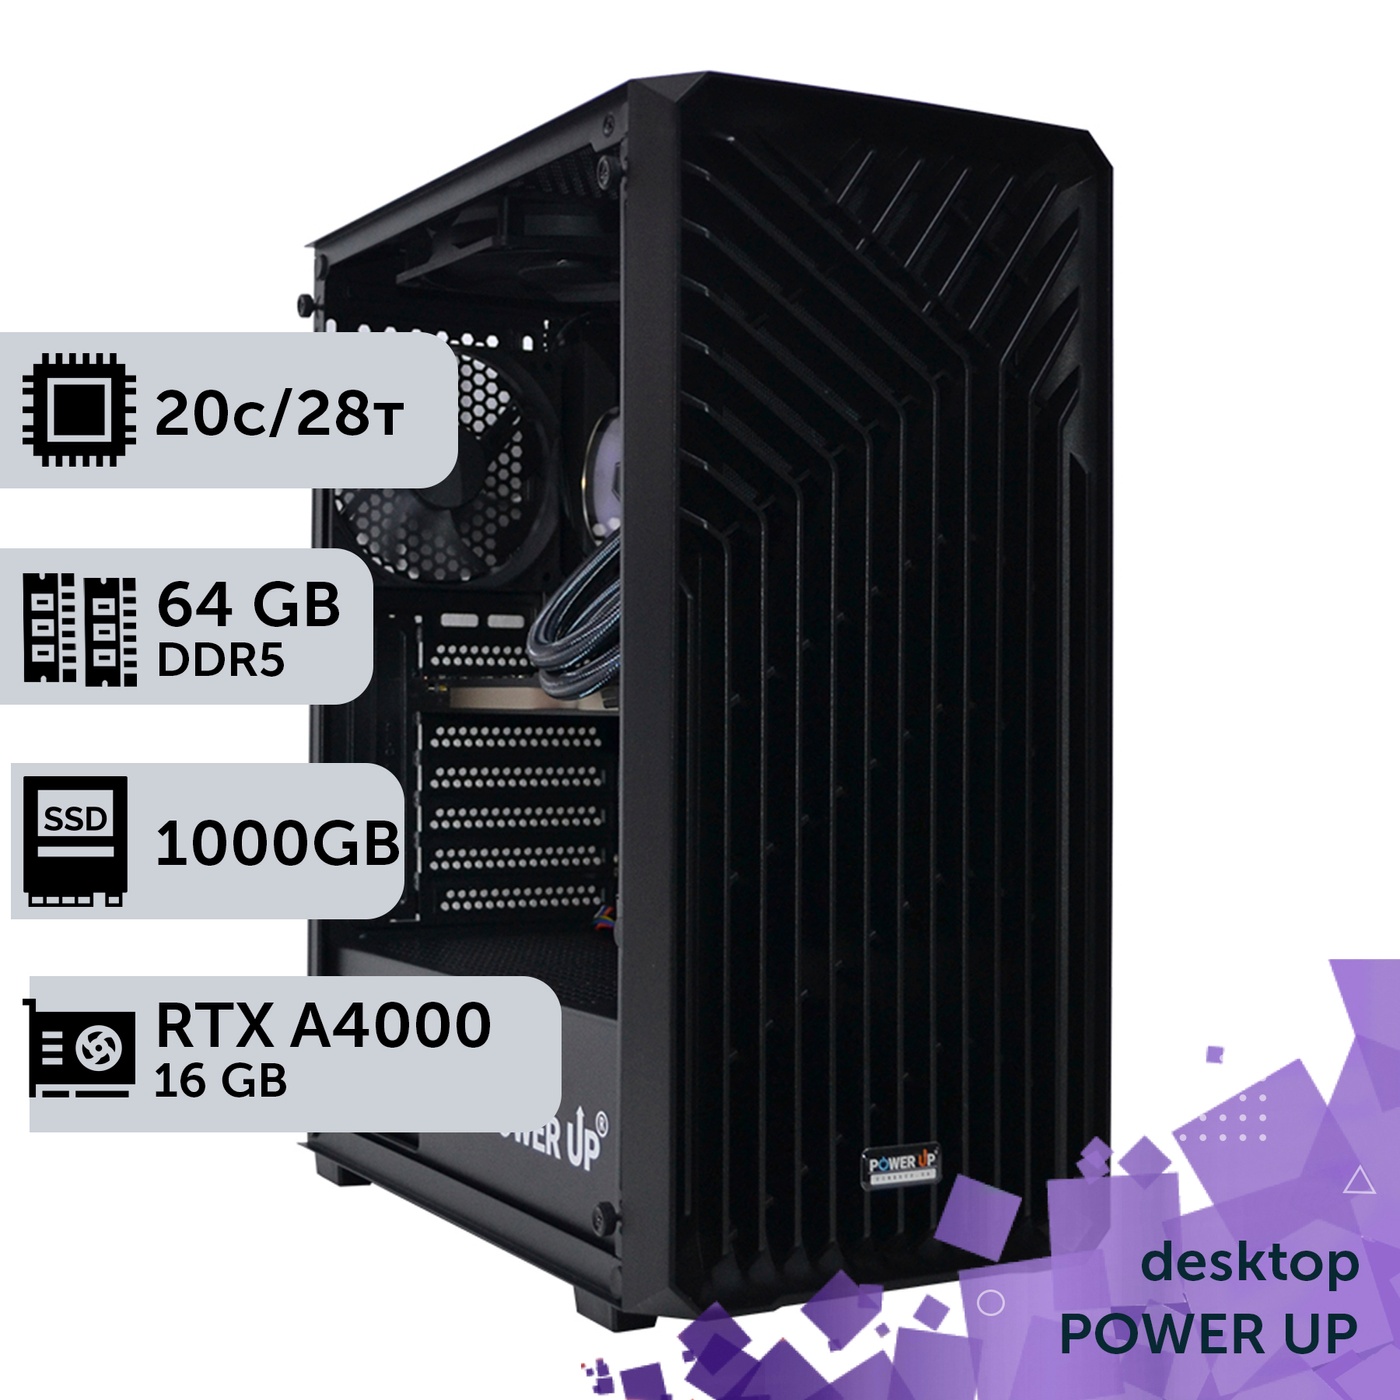 Рабочая станция PowerUp Desktop #349 Core i7 14700K/64 GB/SSD 1TB/NVIDIA Quadro RTX A4000 16GB